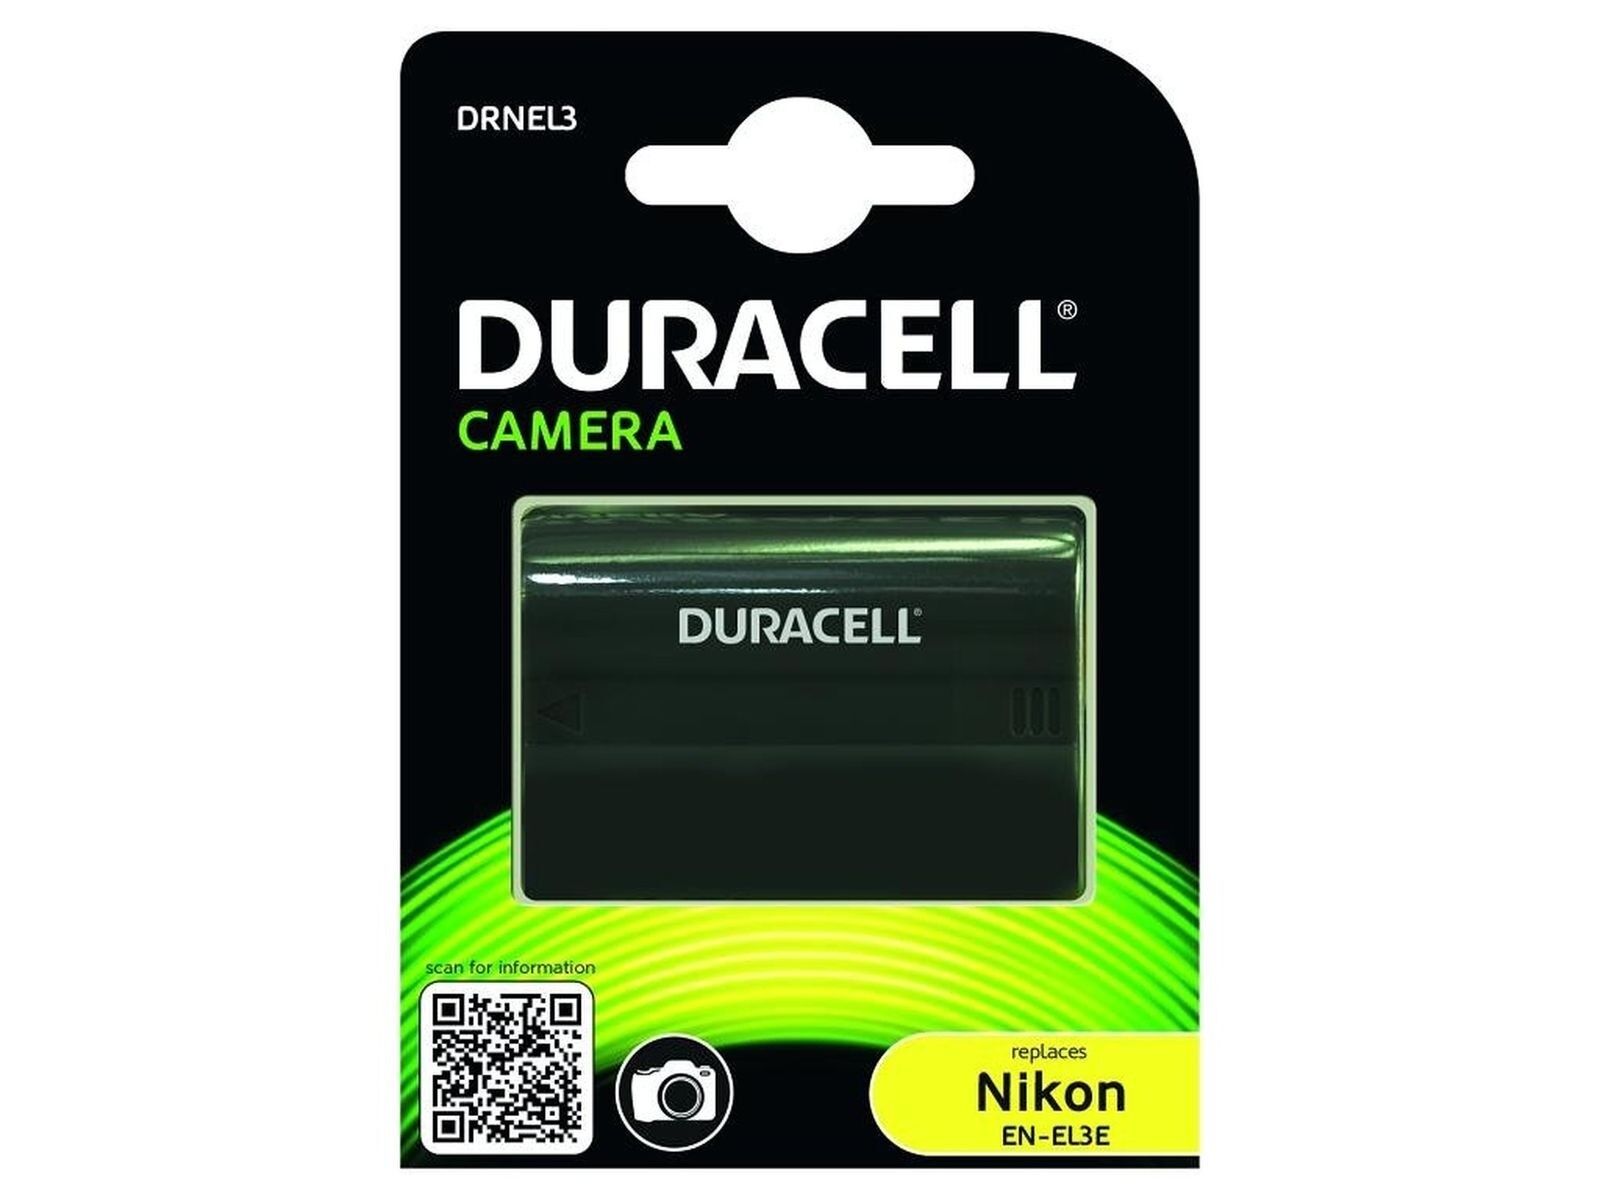 Duracell Digital Camera Battery Nikon EN-EL3 for d700, d300s, d90